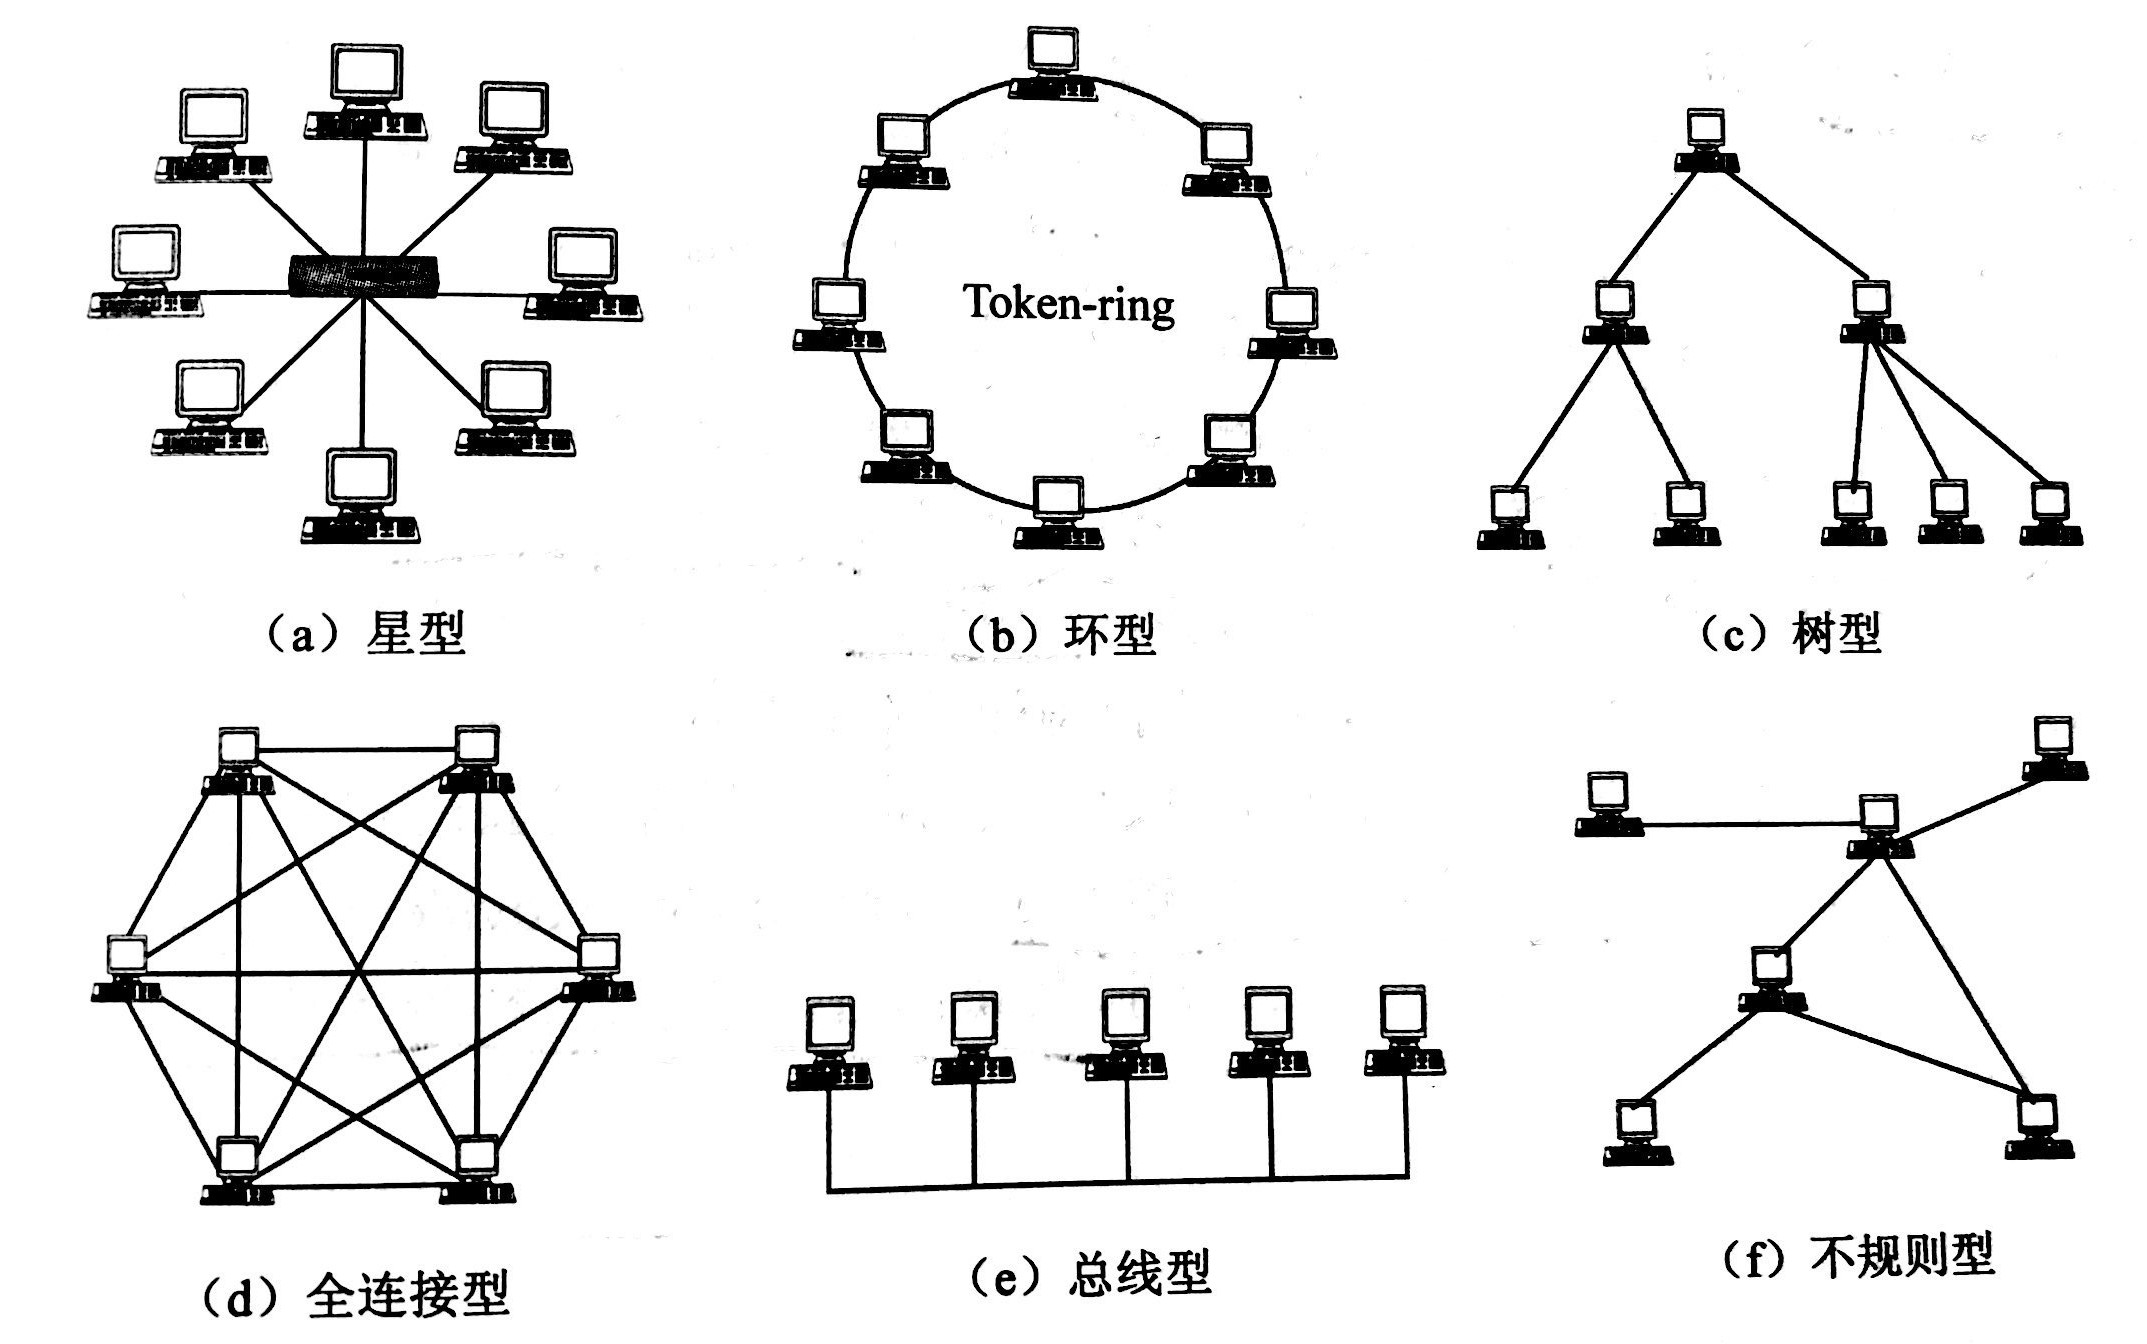 网吧网络拓扑结构图片